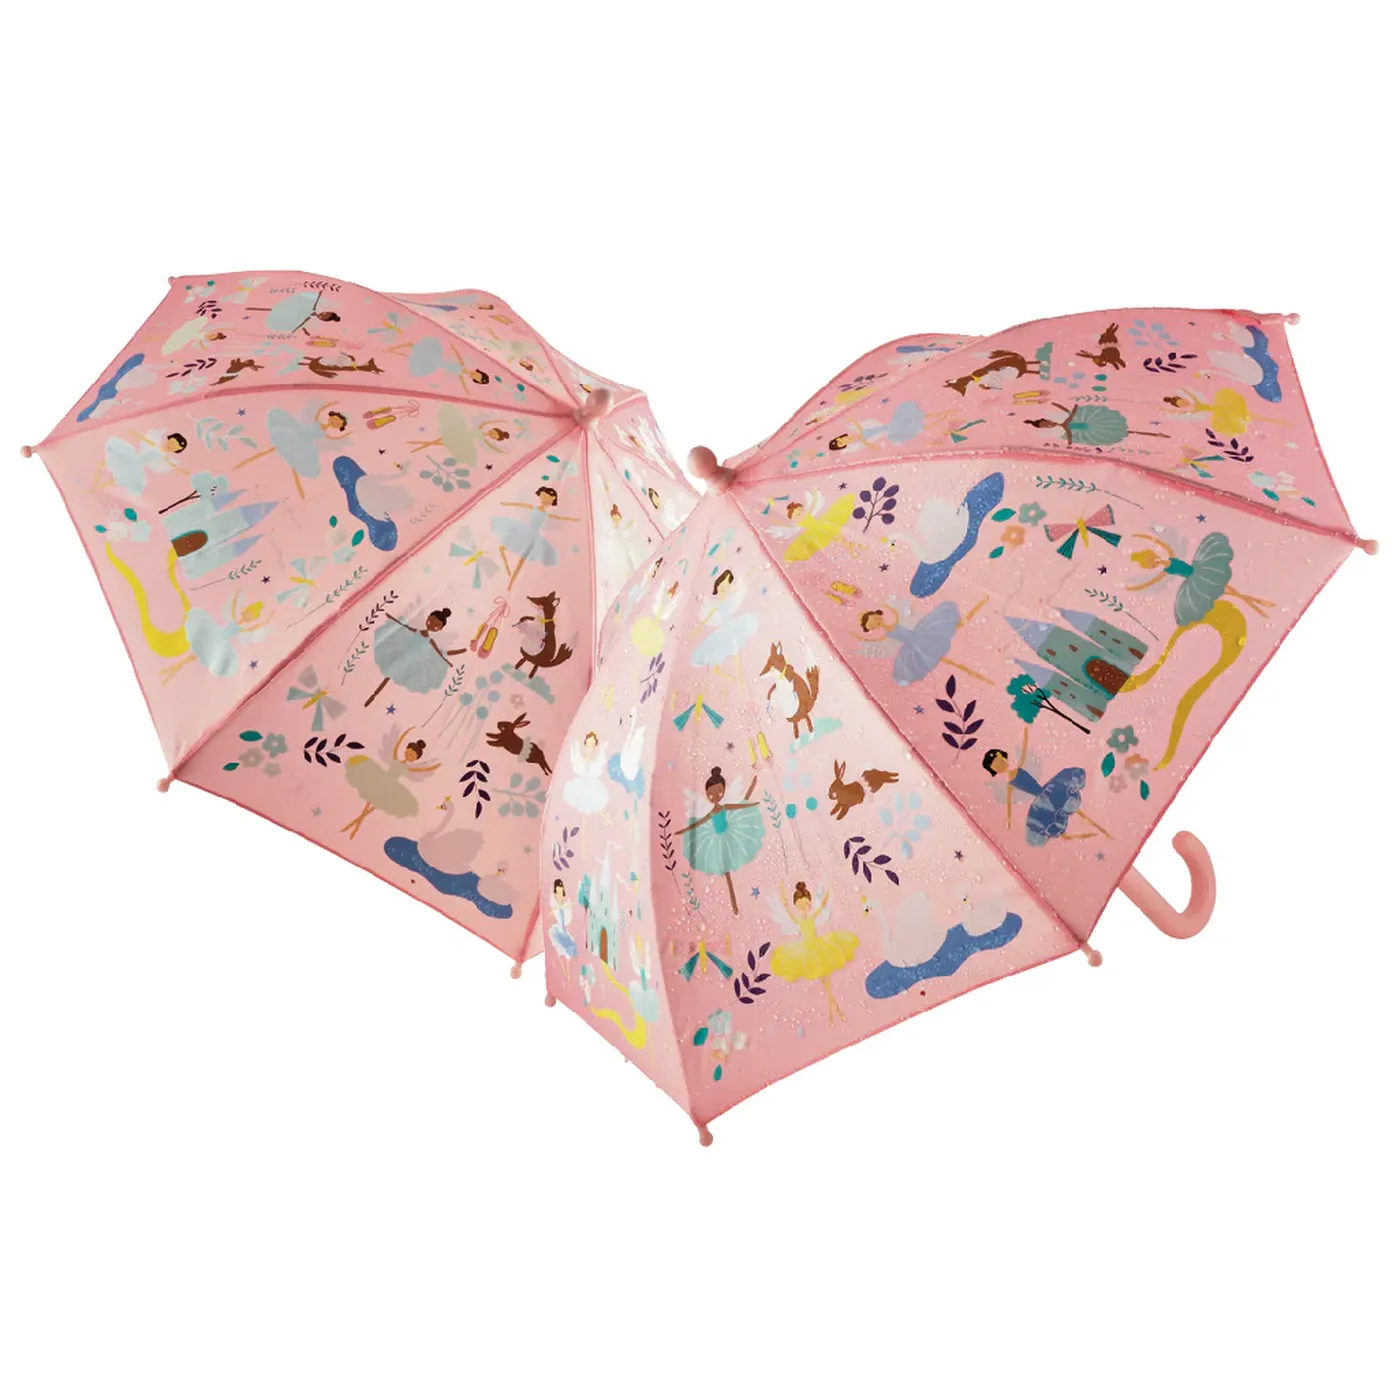 Umbrela pentru copii, in culori schimbatoare Enchantefd, 3 ani+, Floss & Rock